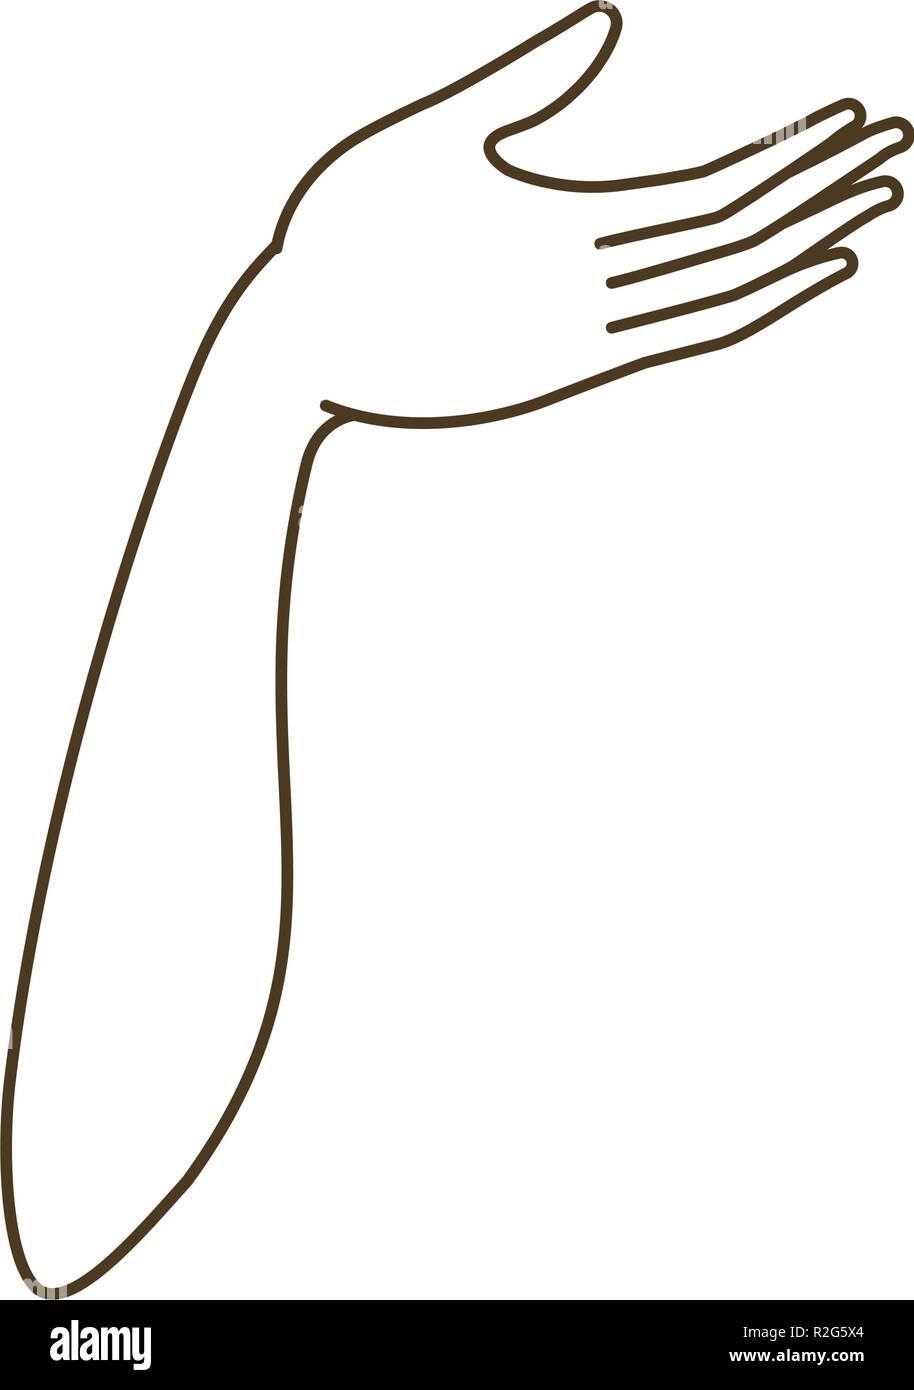 Unterarm mit offener Hand avatar Charakter Stock Vektor